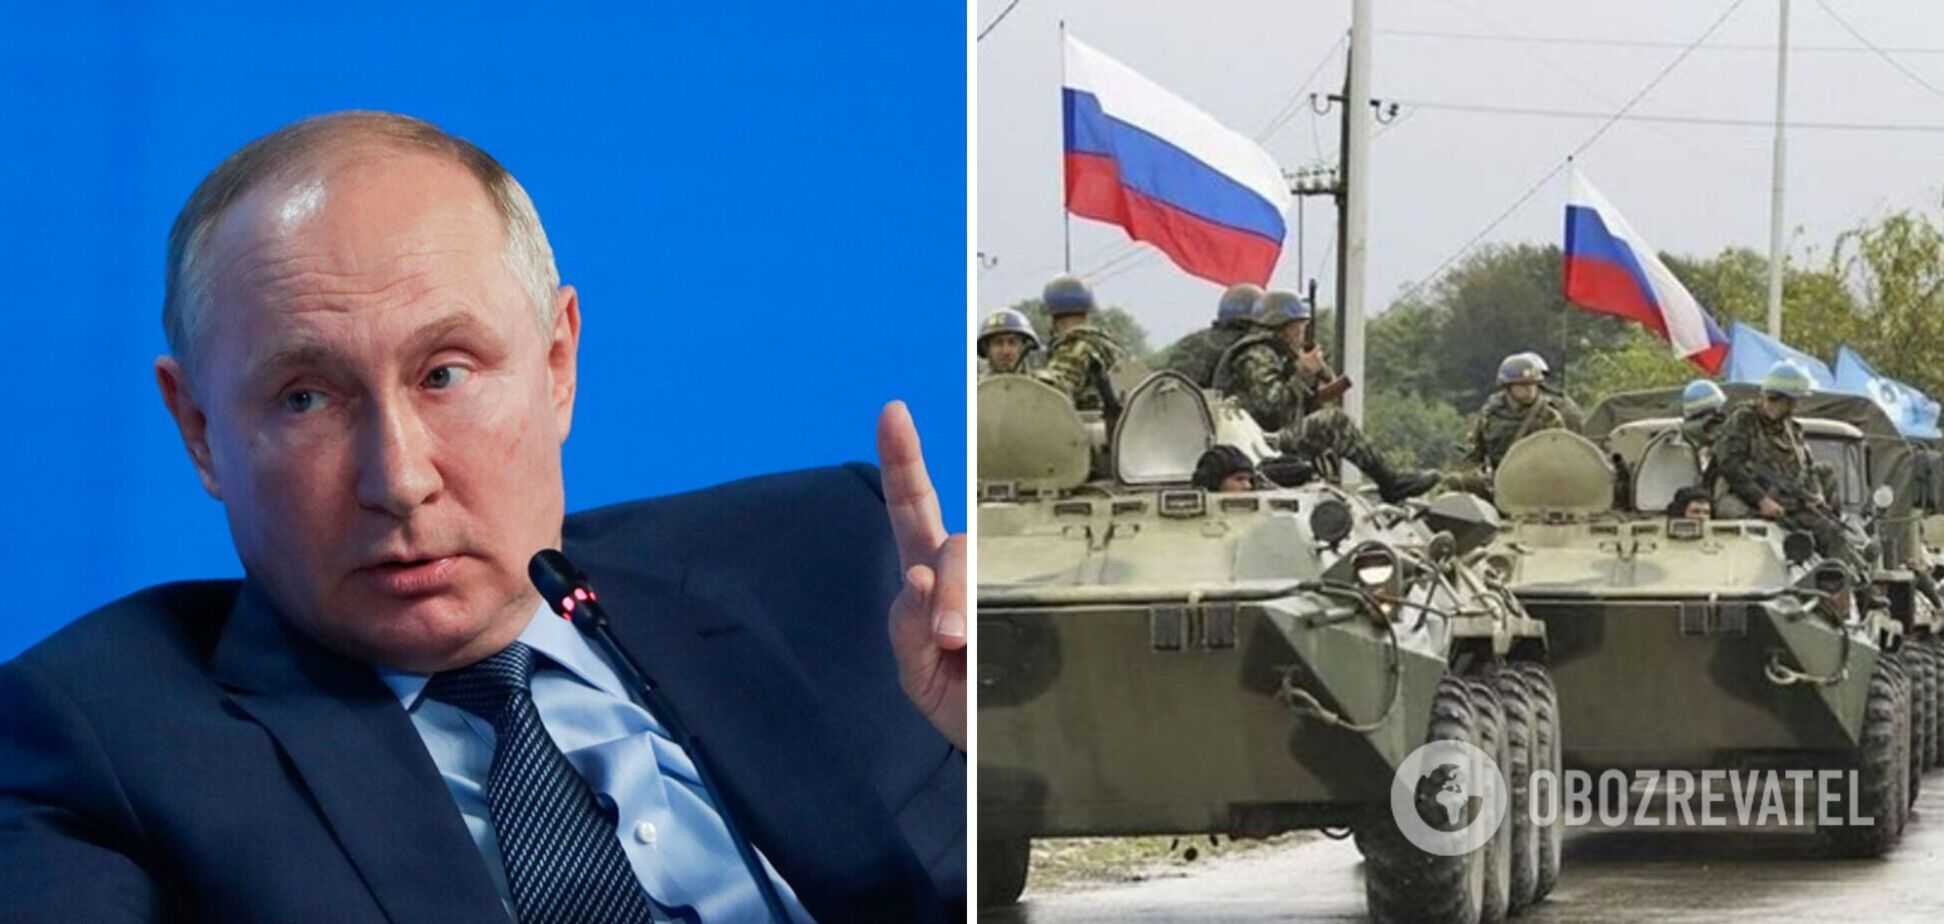 Путин анонсировал масштабные военные учения ОДКБ осенью